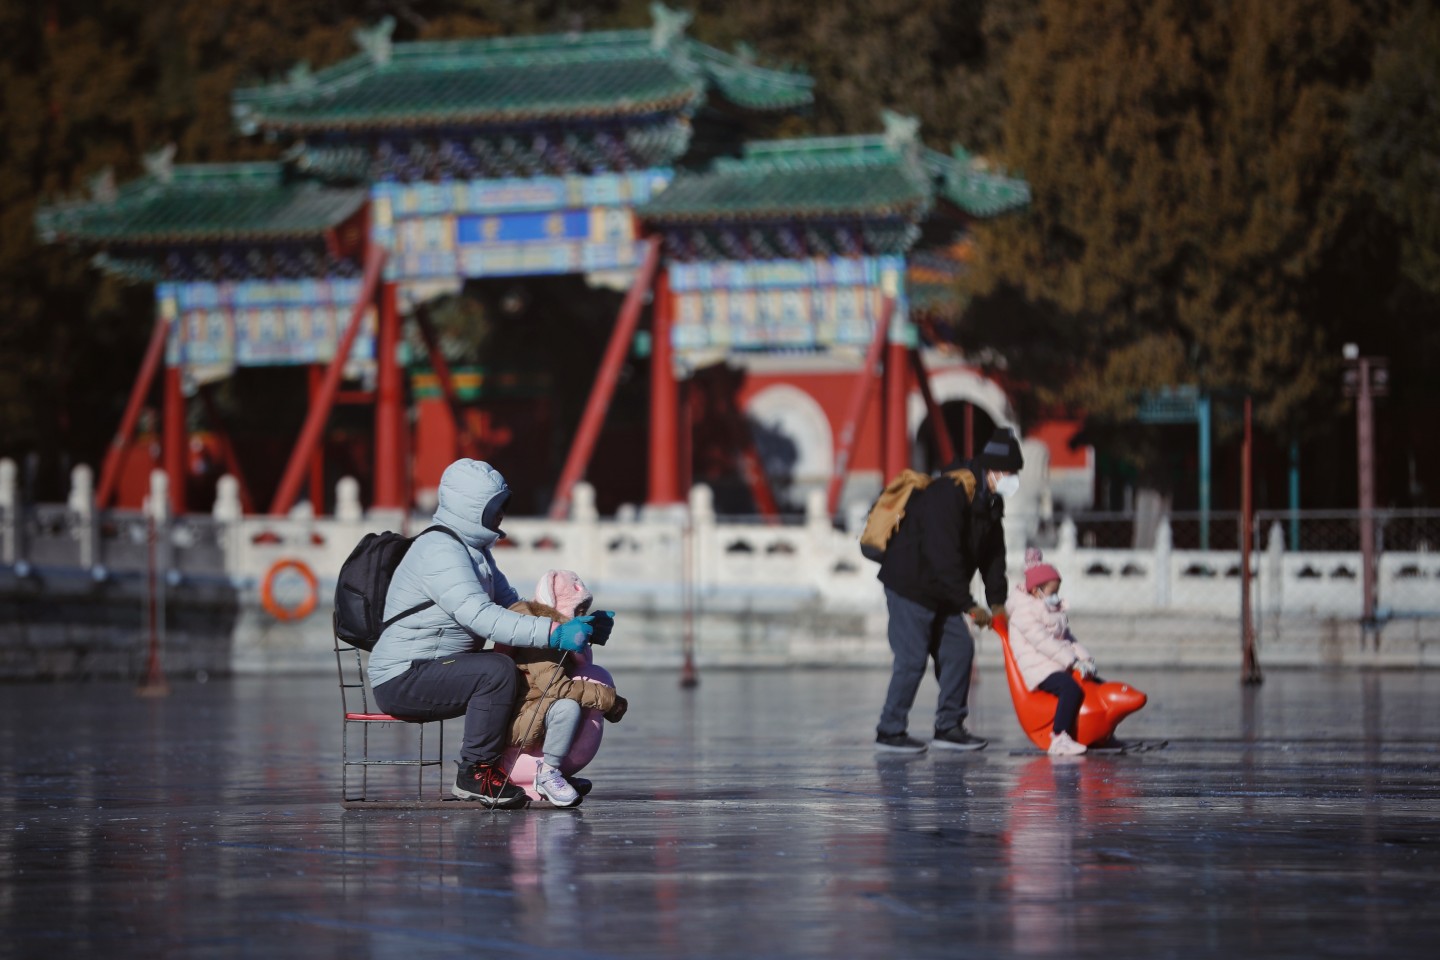 北京环球影城7大主题区官方介绍 与变形金刚相约魔法世界_3DM单机